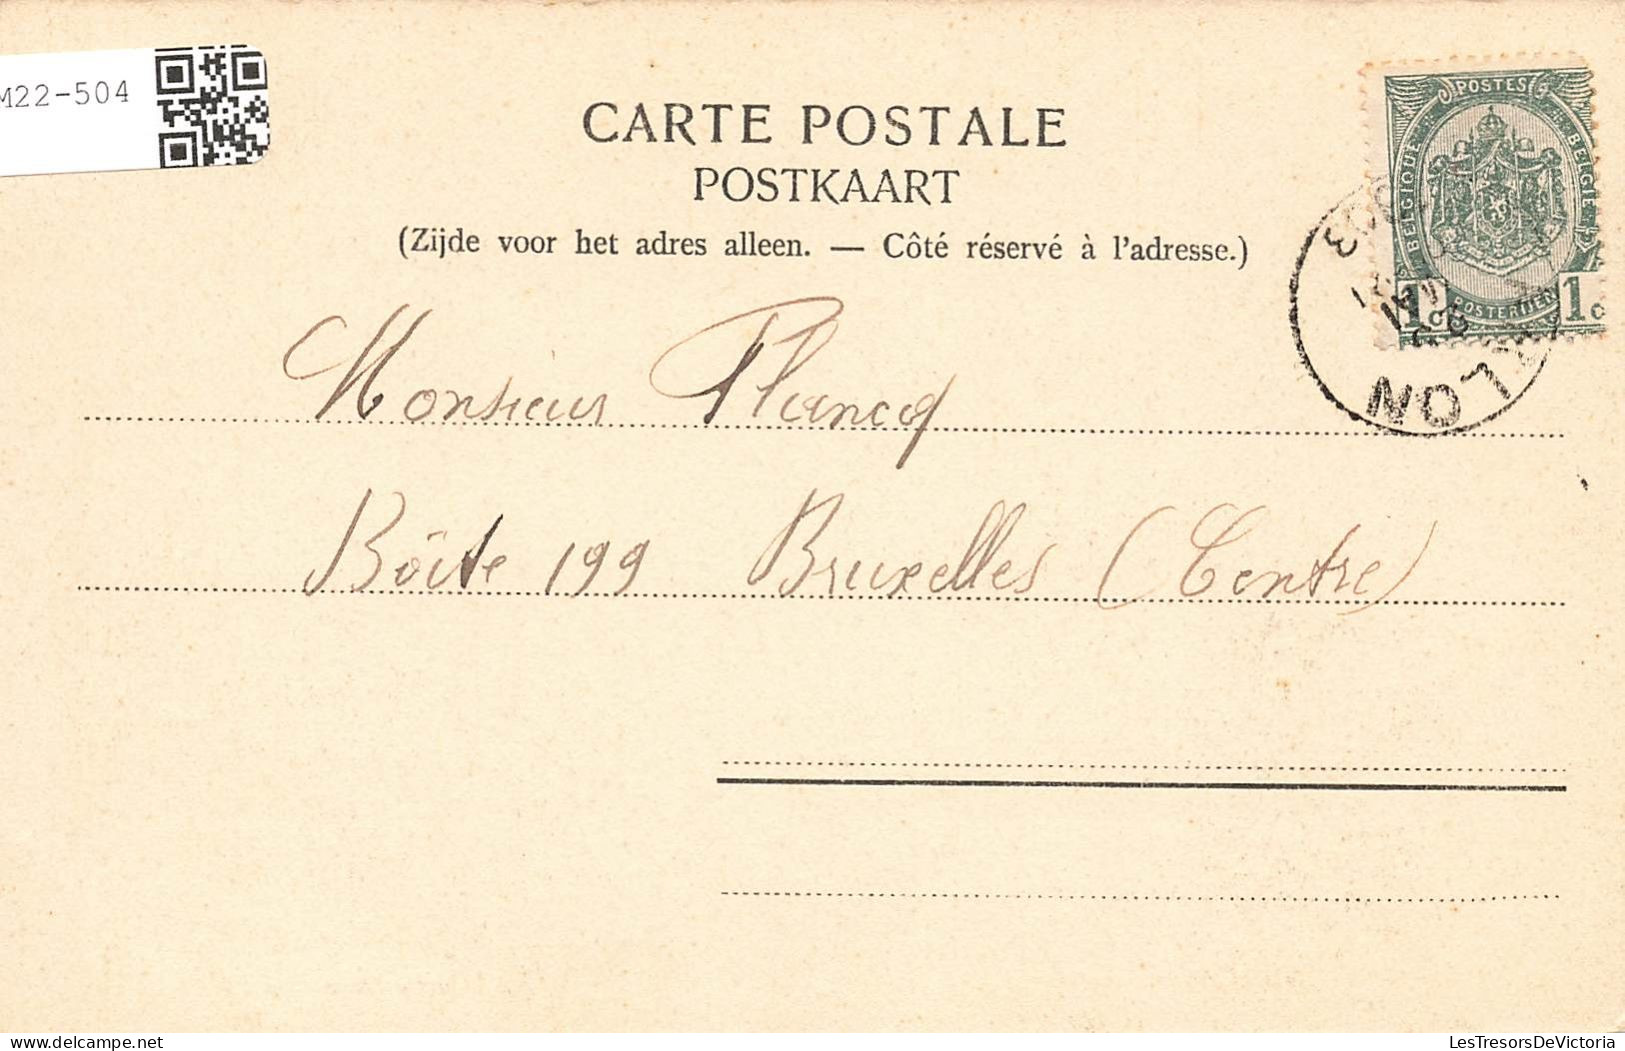 BELGIQUE - Arlon - L' Hôtel Et Parc Du Gouvernement Provincial - Carte Postale Ancienne - Arlon